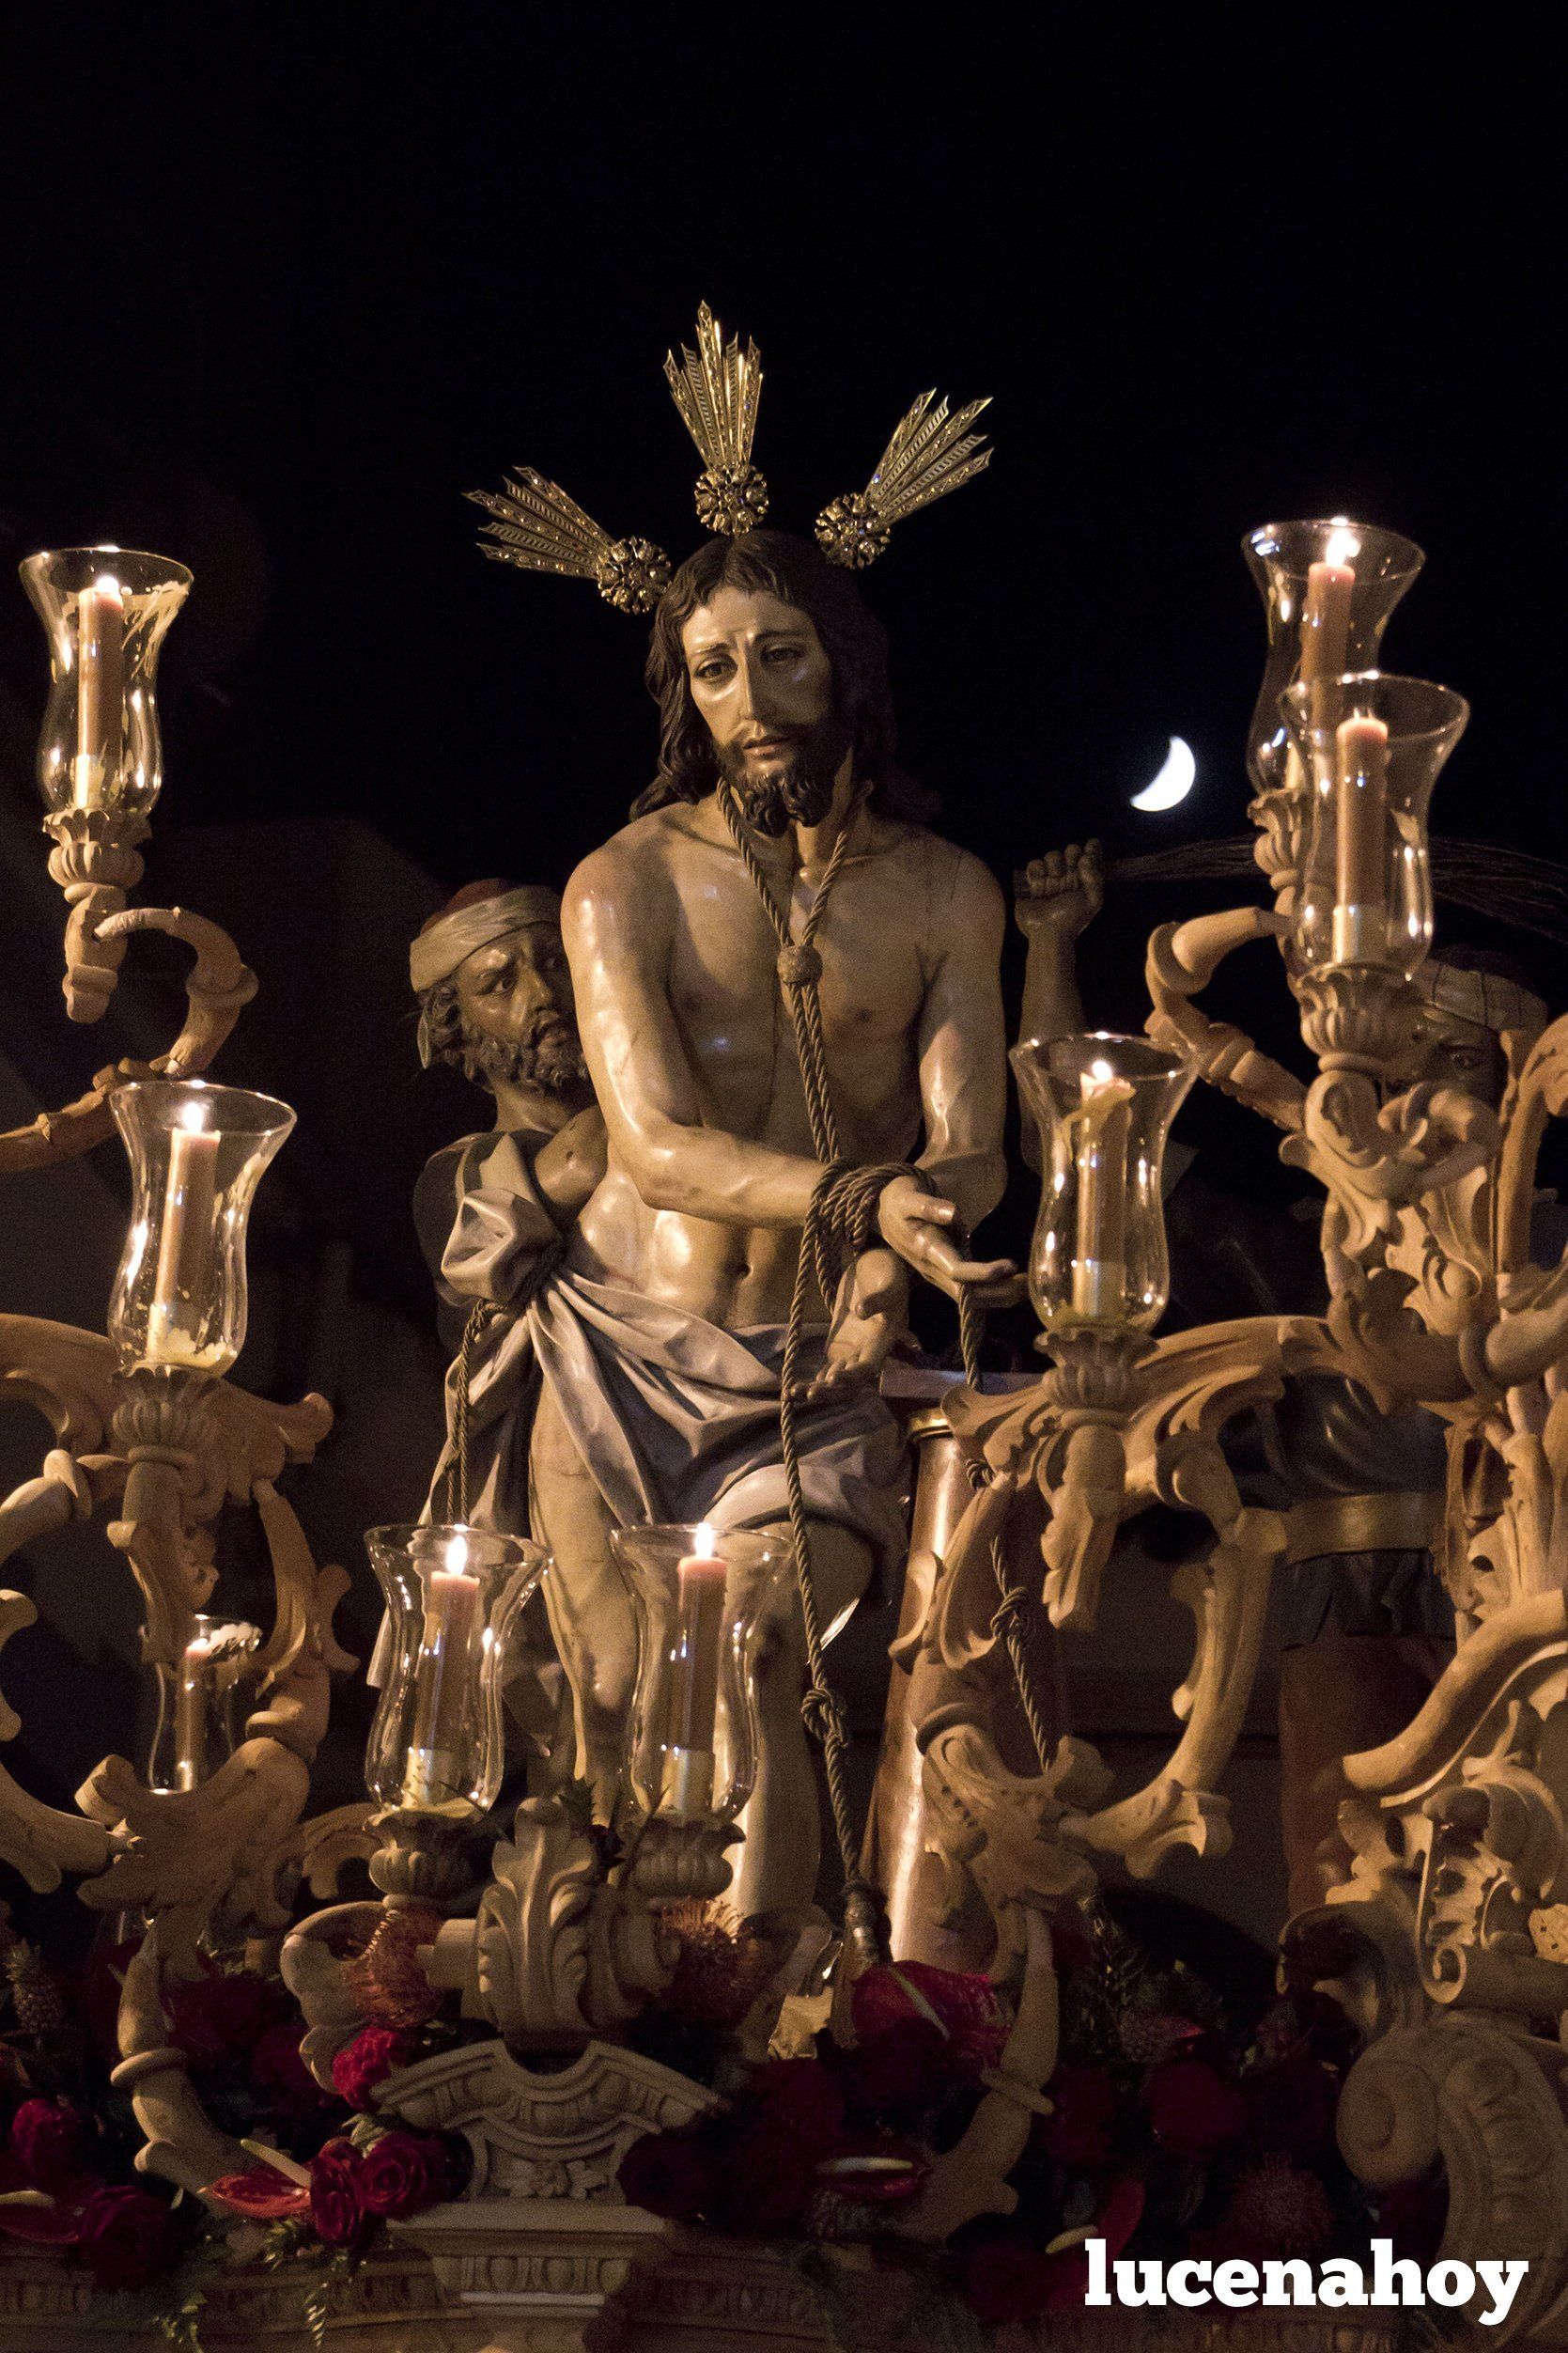 Cabra: La Procesión Magna pone broche de oro al Año Jubilar en honor a la Virgen de la Sierra